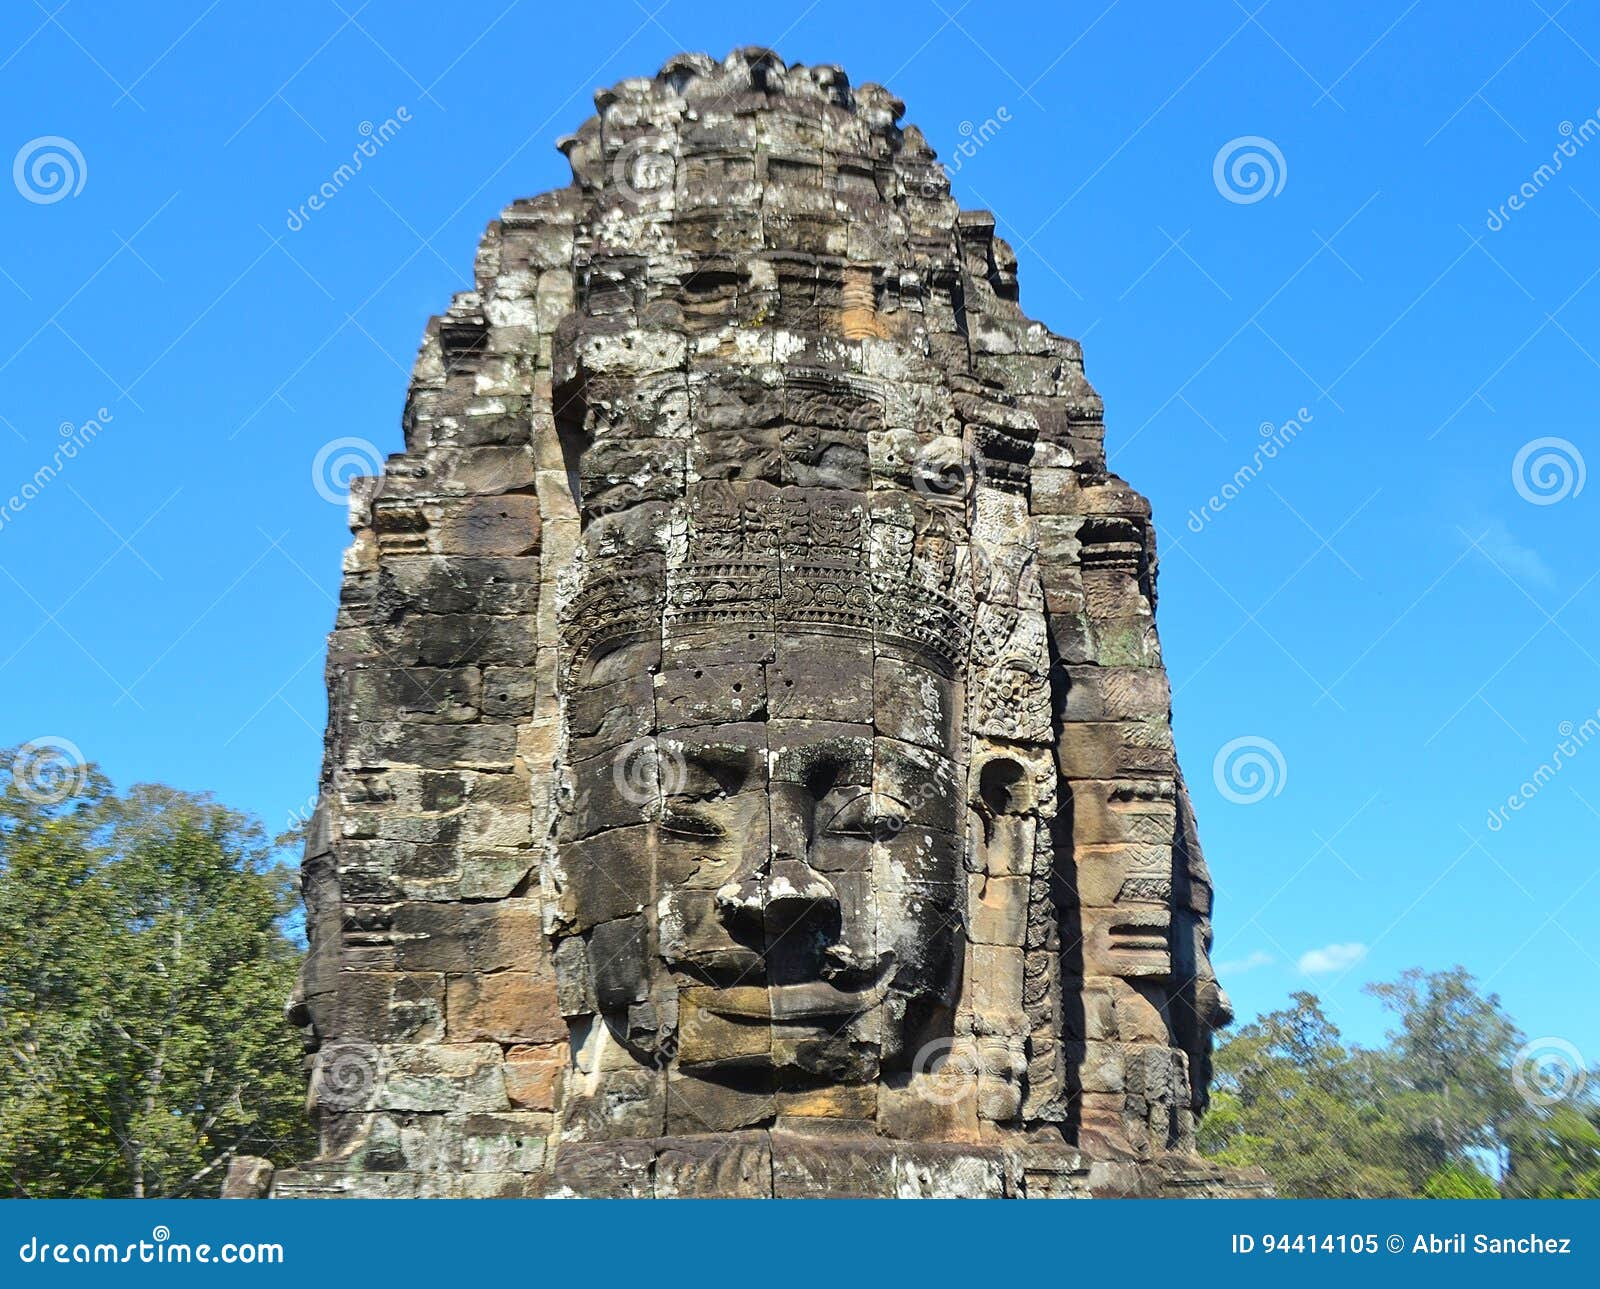 buddha sculpture face